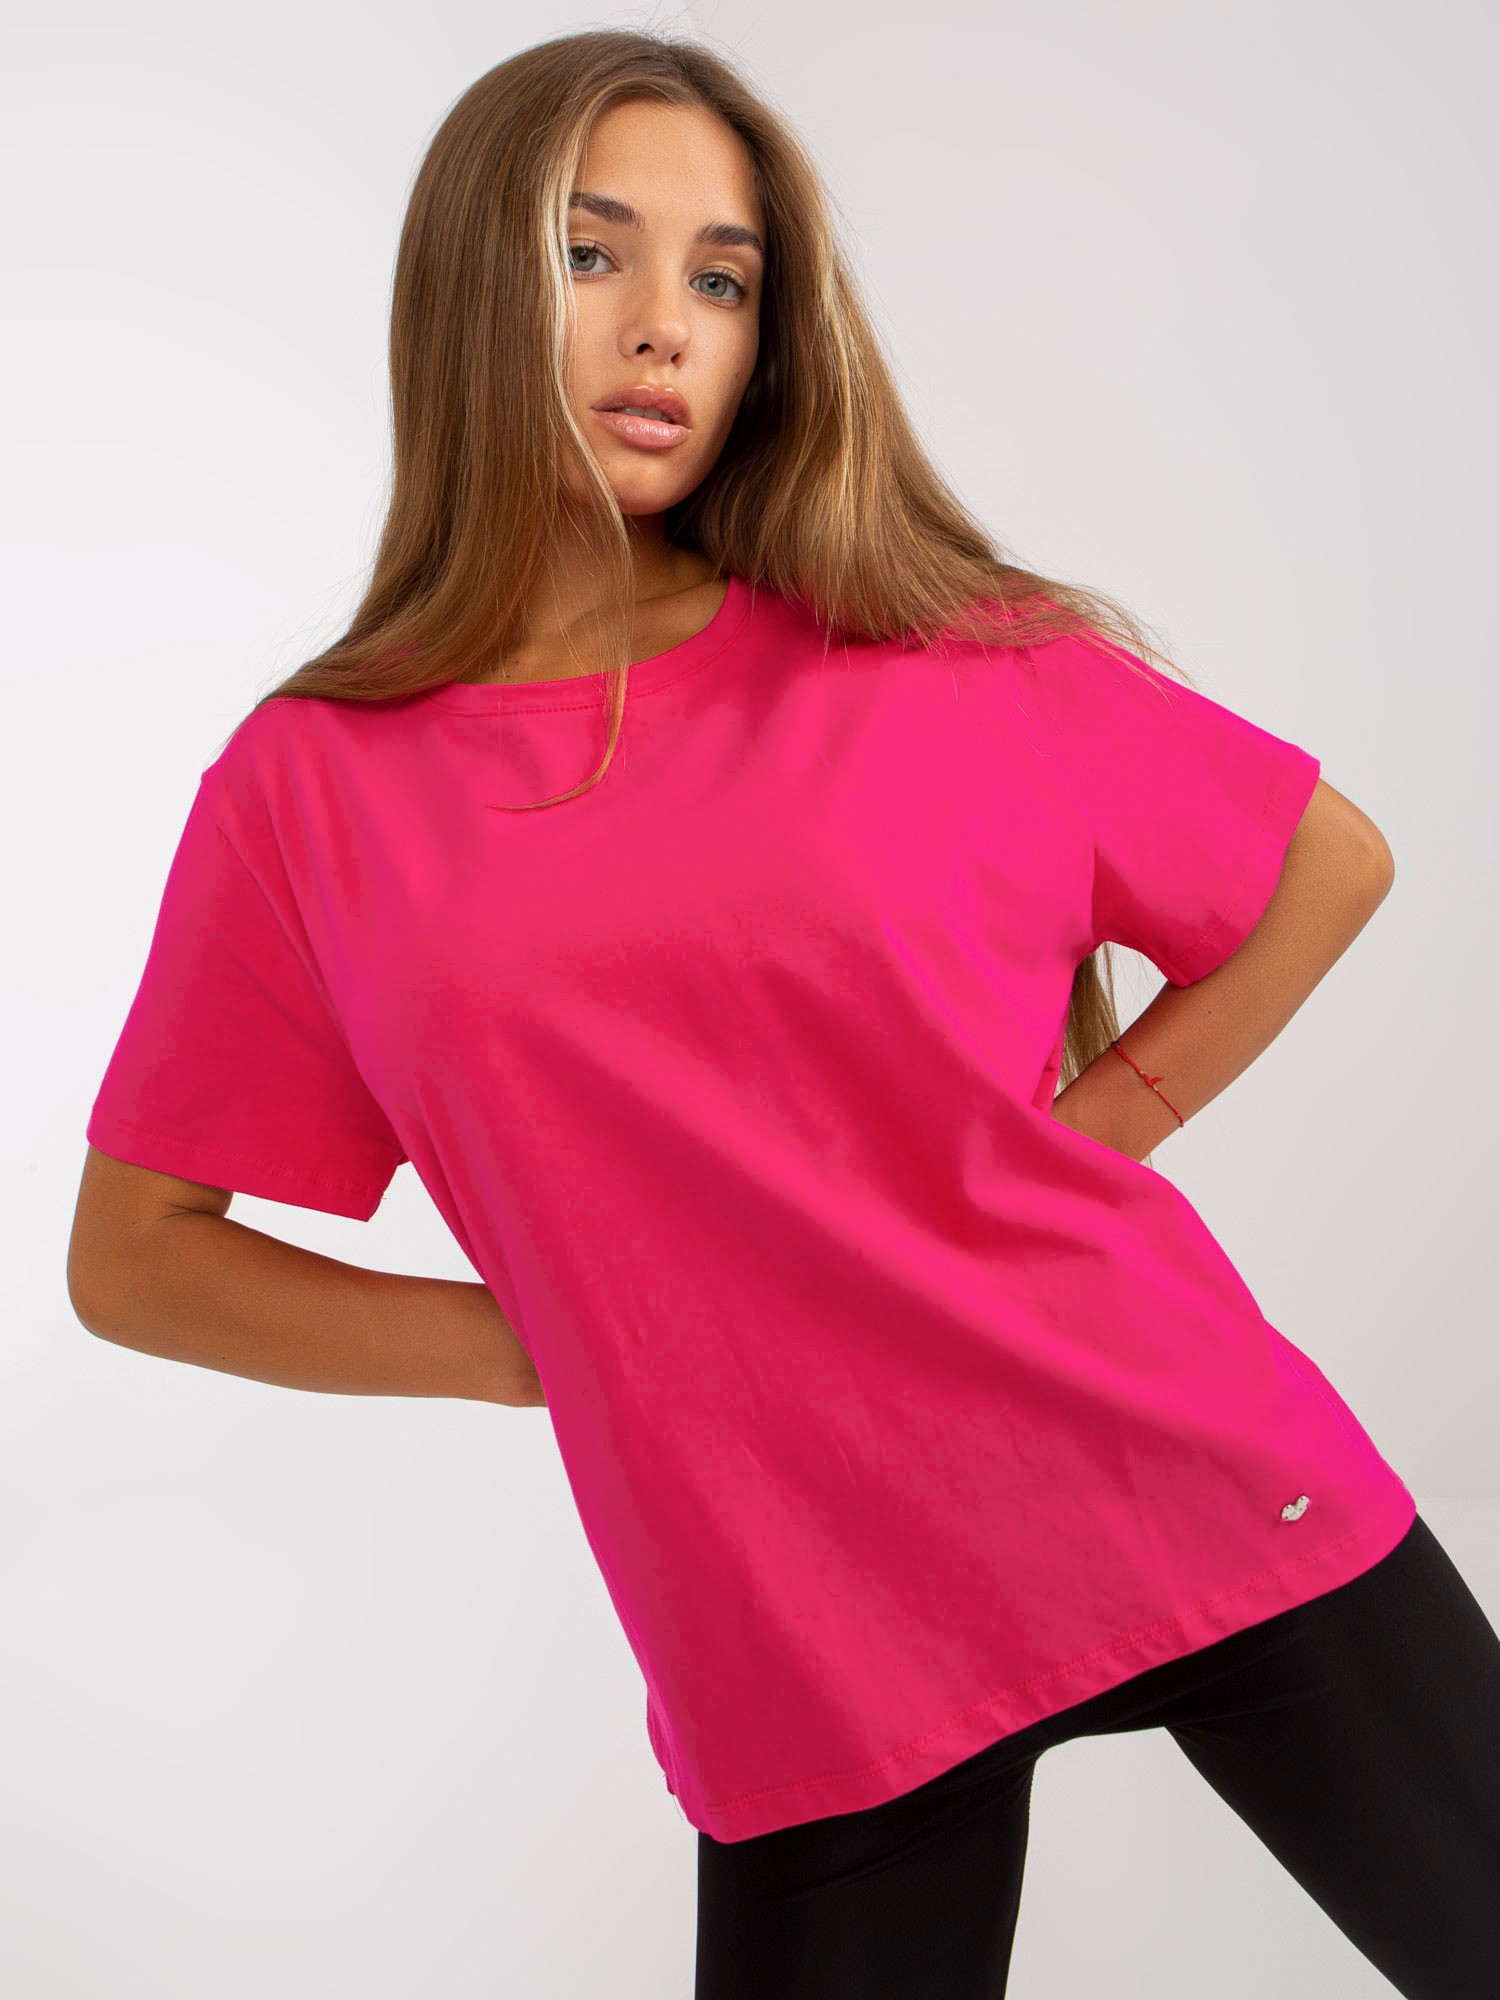 Tmavě růžové dámské tričko s krátkými rukávy RV-TS-8047.57P-fuchsia Velikost: L/XL